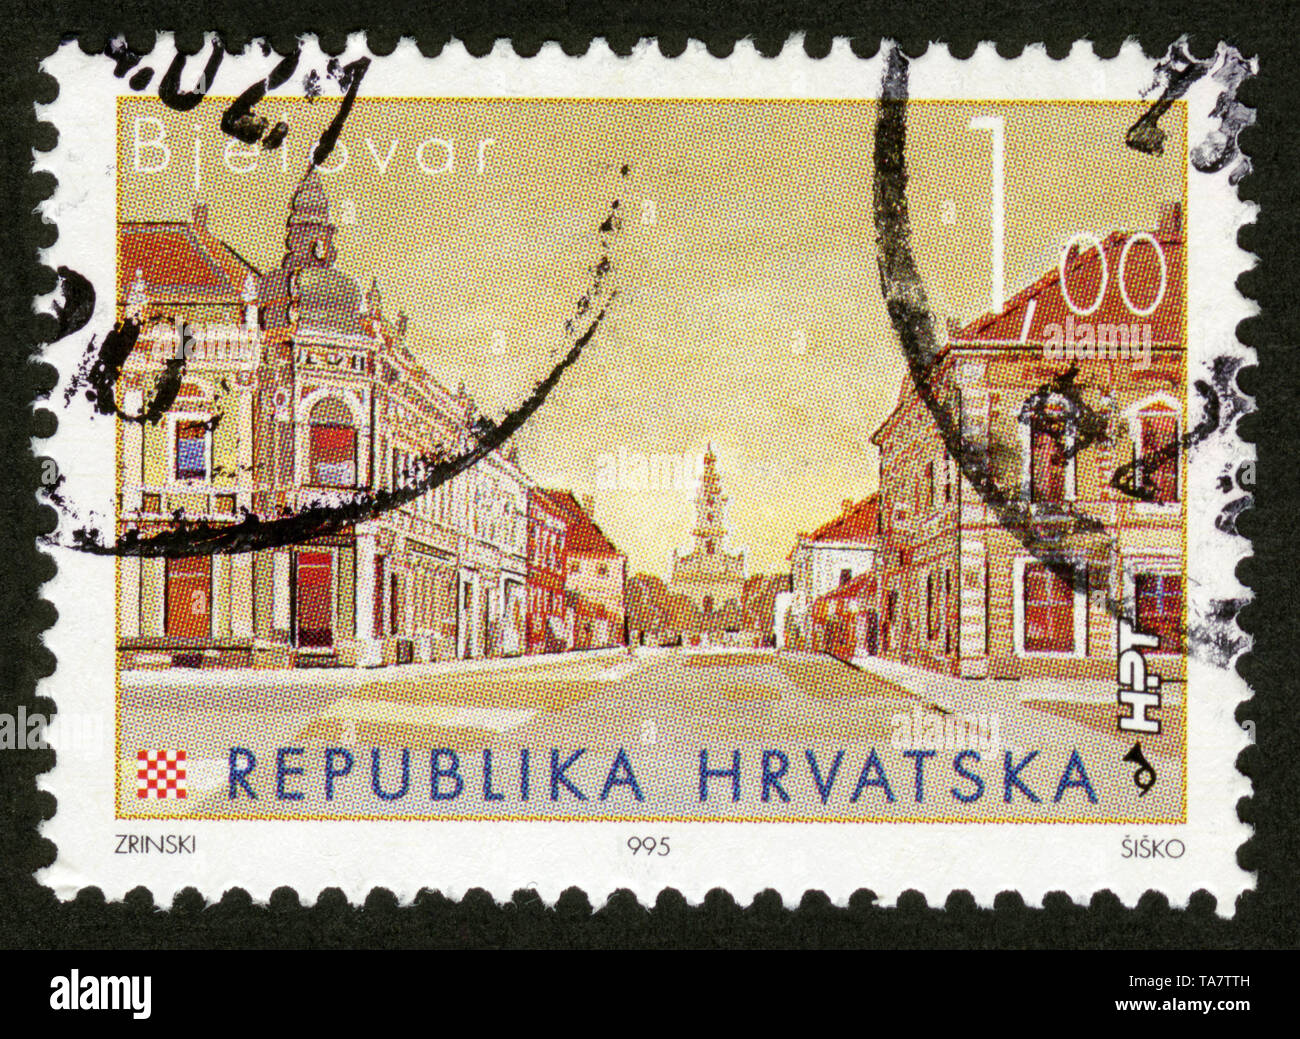 Stamp print in Croatia,1995,Bjelovar Stock Photo